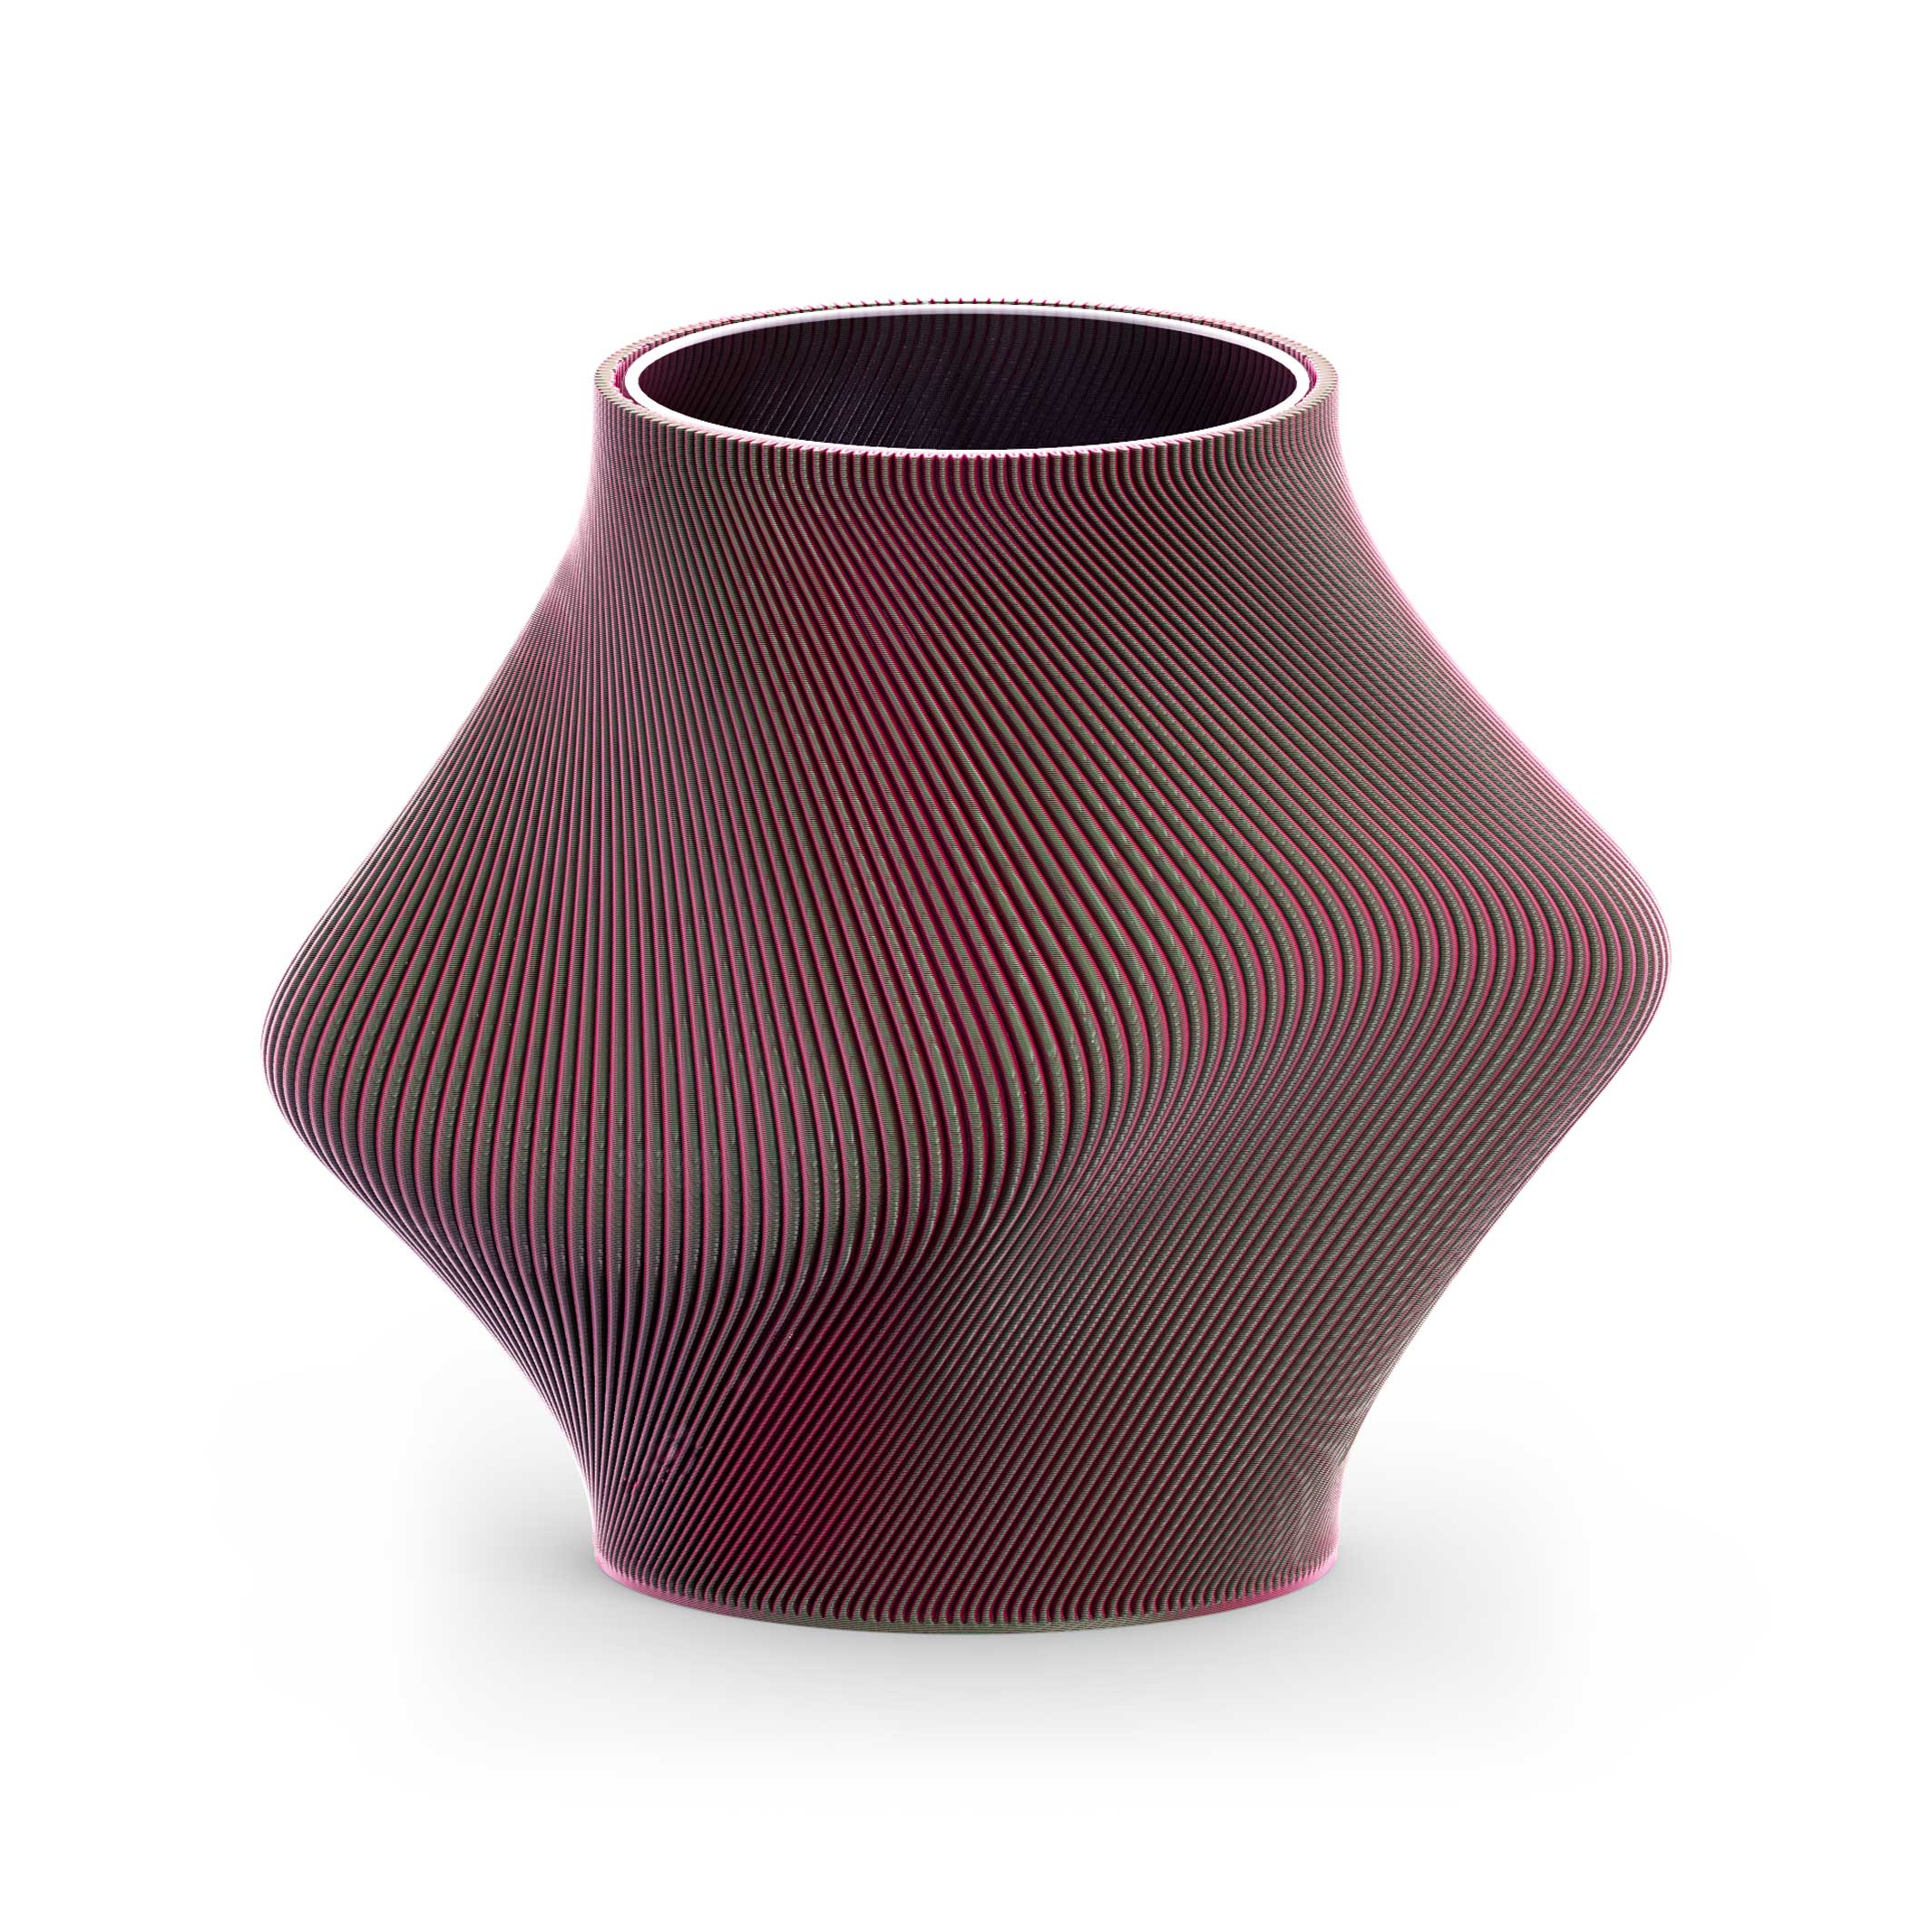 BLOZ VASE Watermelon | 3D printed VASE with inner glass vase | 20 cm high | Sheyn